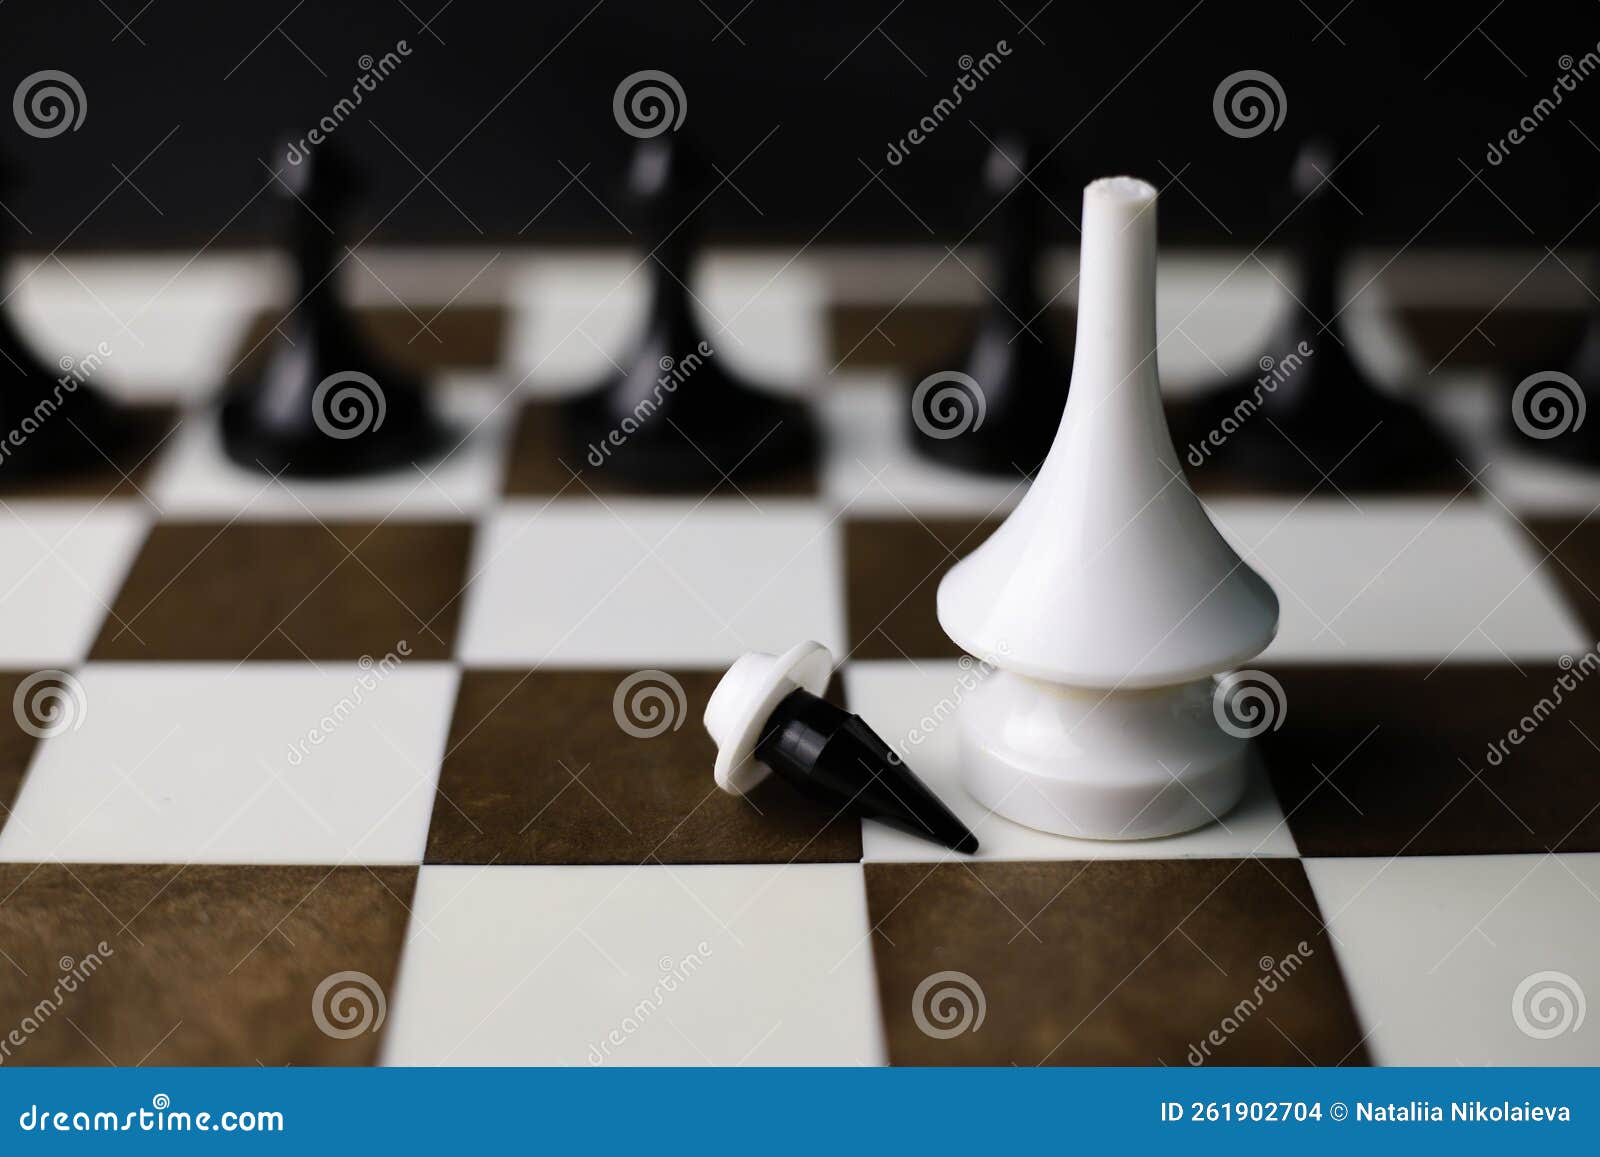 Um jogo de xadrez com um homem em pé sobre um tabuleiro de xadrez com uma  grande peça de xadrez branca ao fundo.